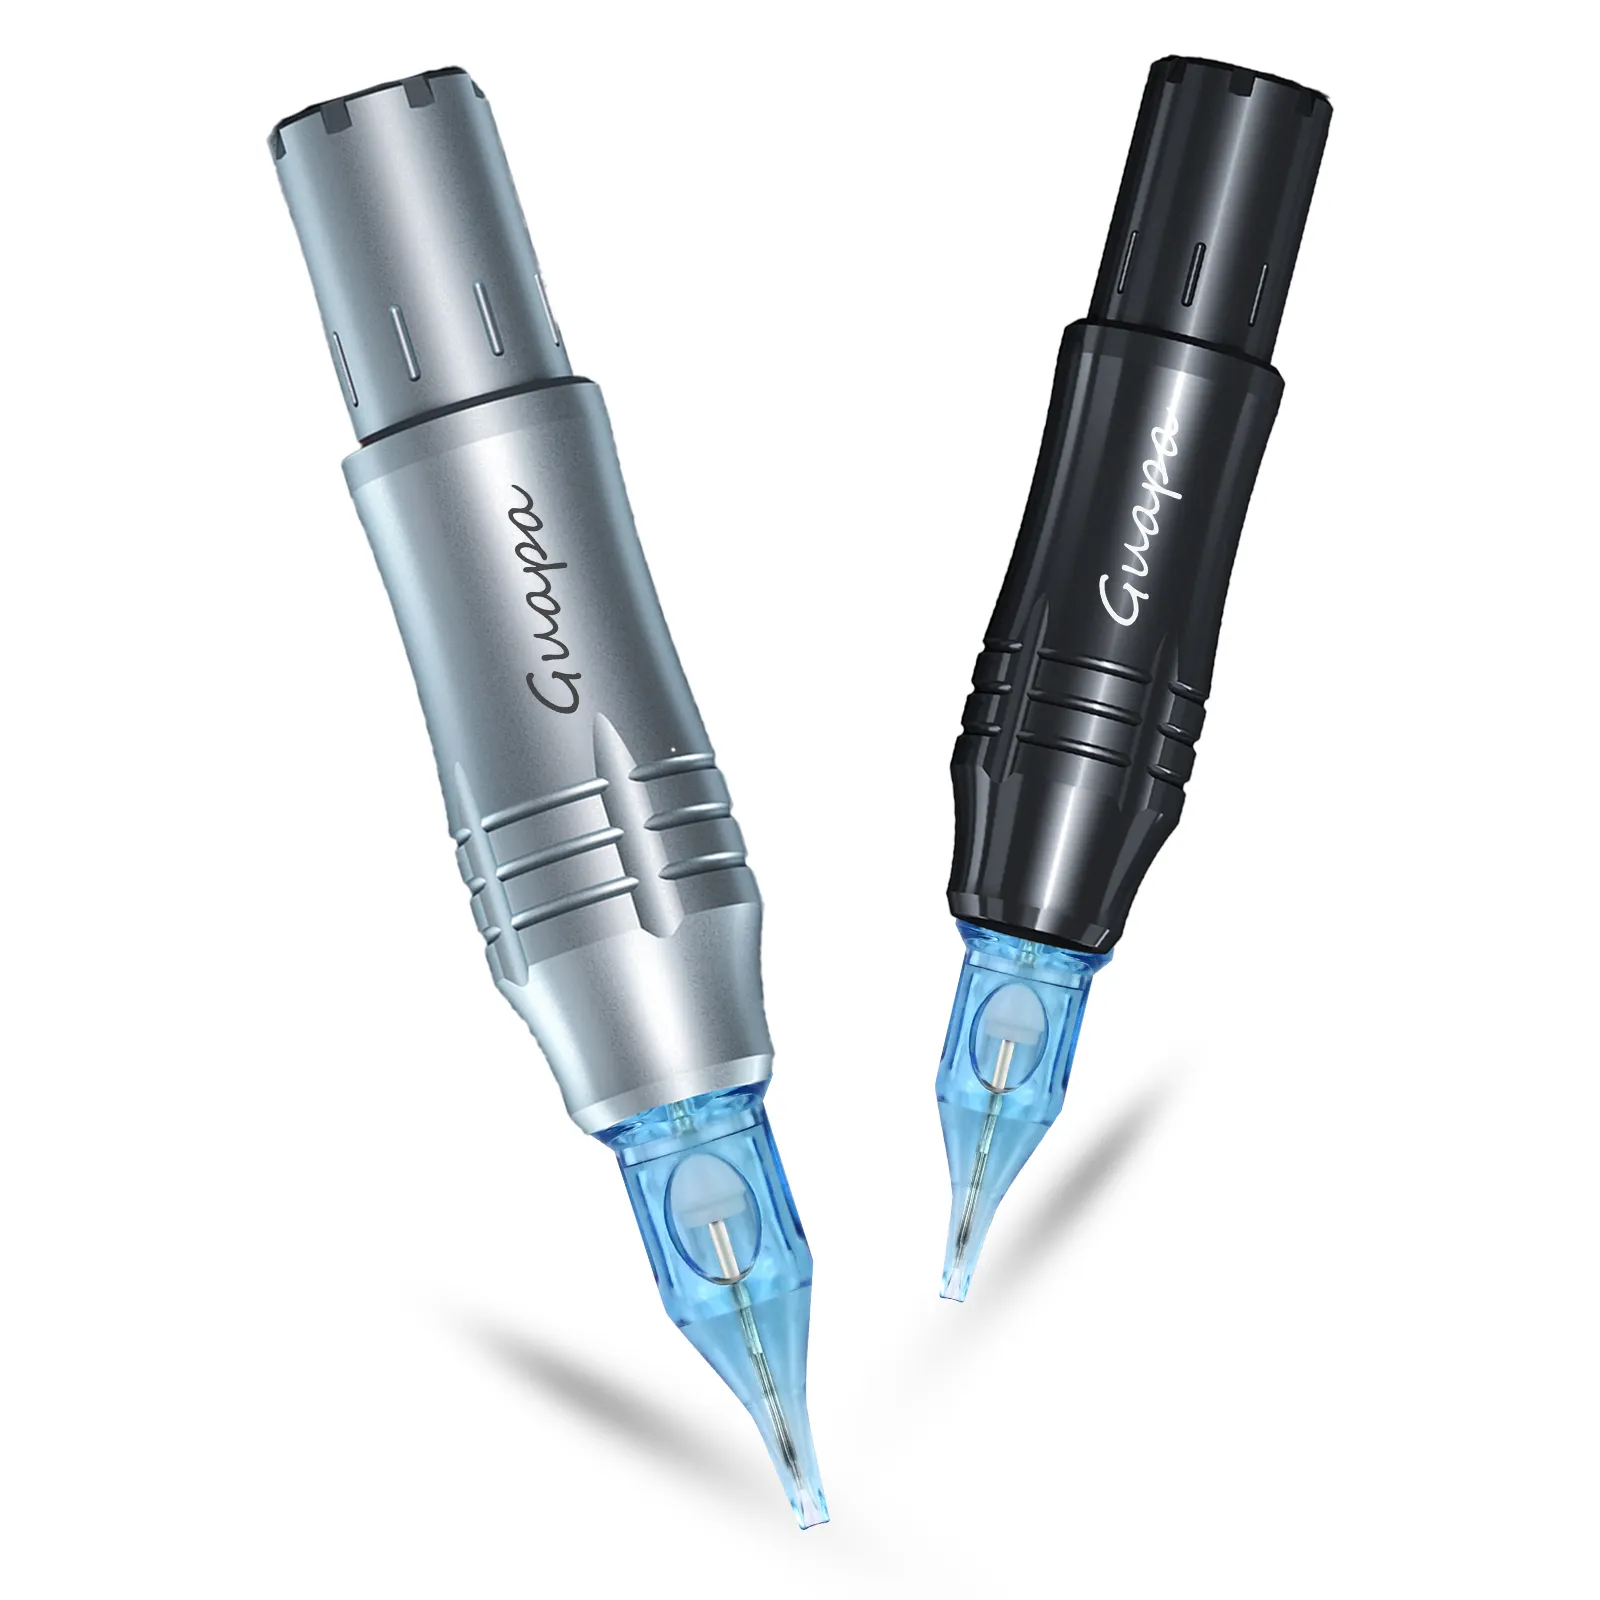 Profesyonel dövme kalemi makine çekirdeksiz Motor mavi Led ışık dudak kalıcı makyaj makinesi ile ergonomik tasarım düşük gürültü